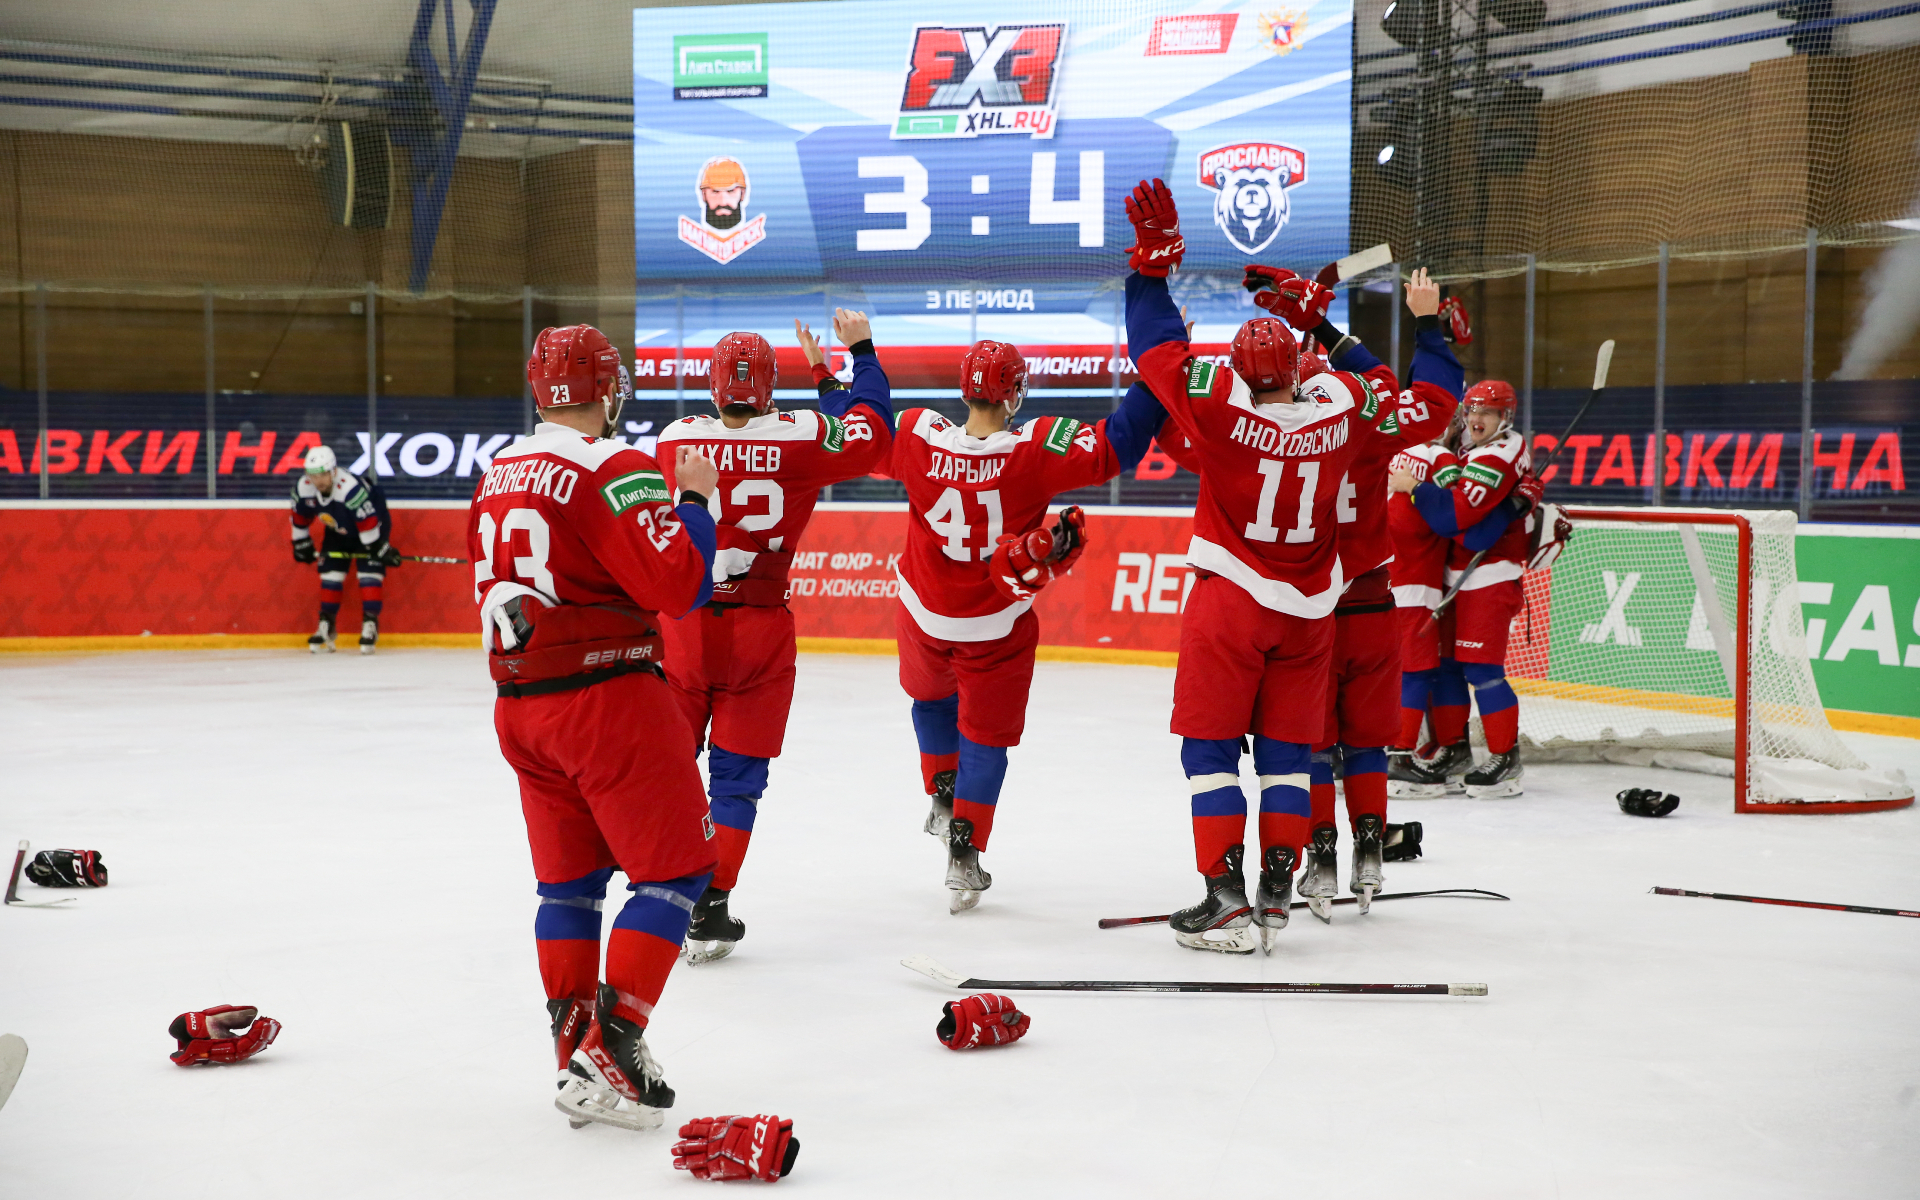 Команда Ярославль выиграла чемпионат ФХР по хоккею 3х3